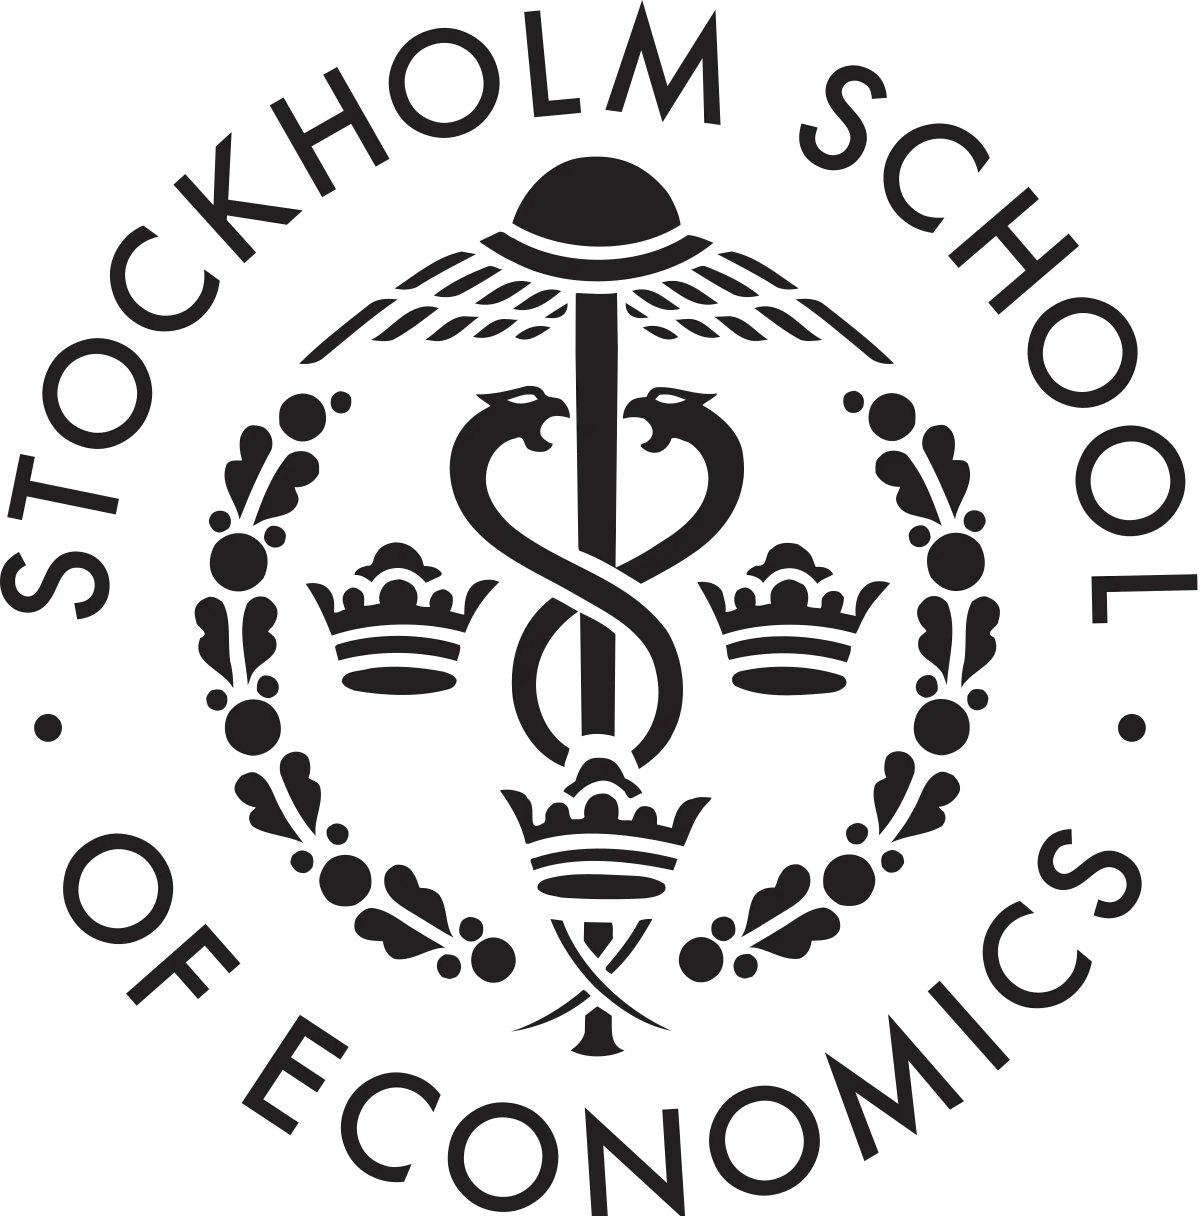 by stockholm school of economics